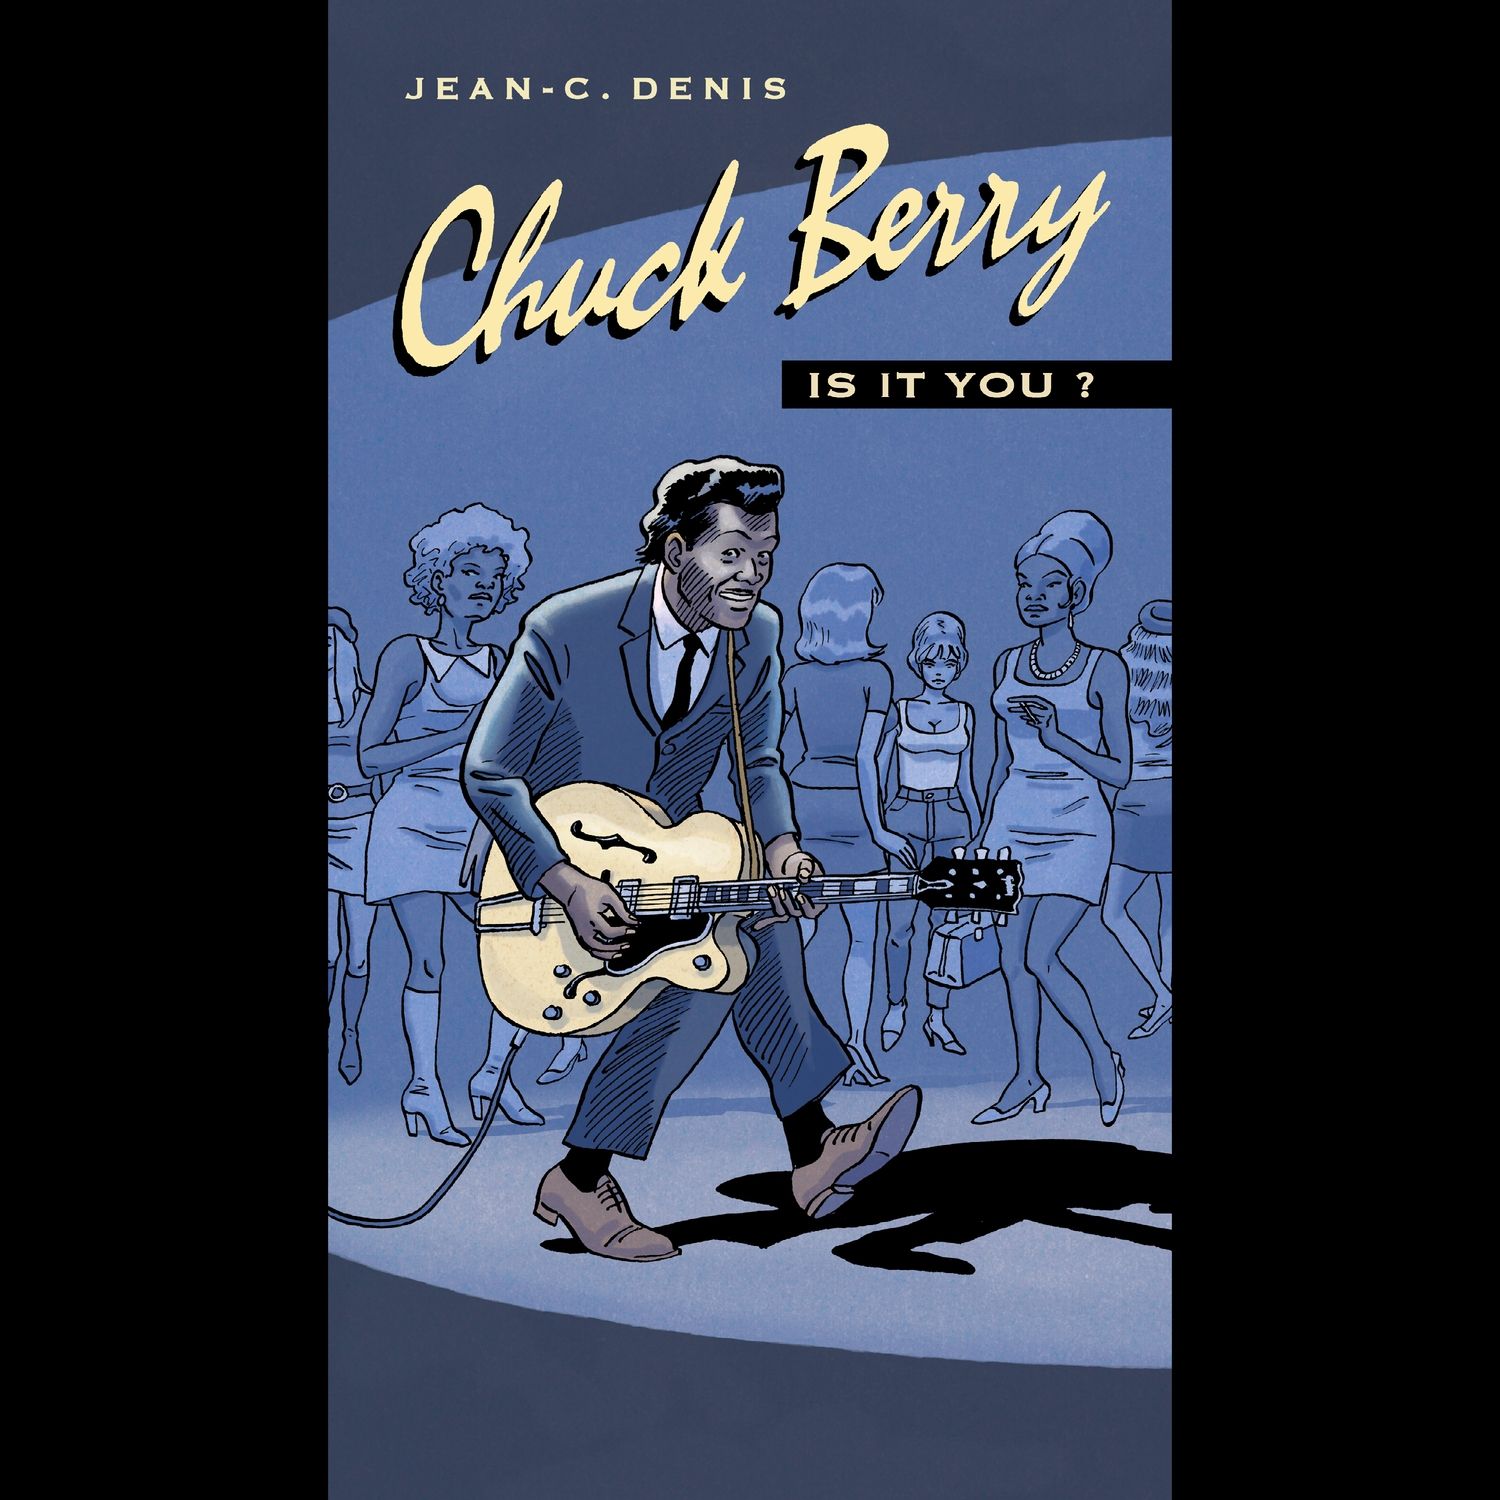 Imagem do álbum BD Music Presents Chuck Berry do(a) artista Chuck Berry